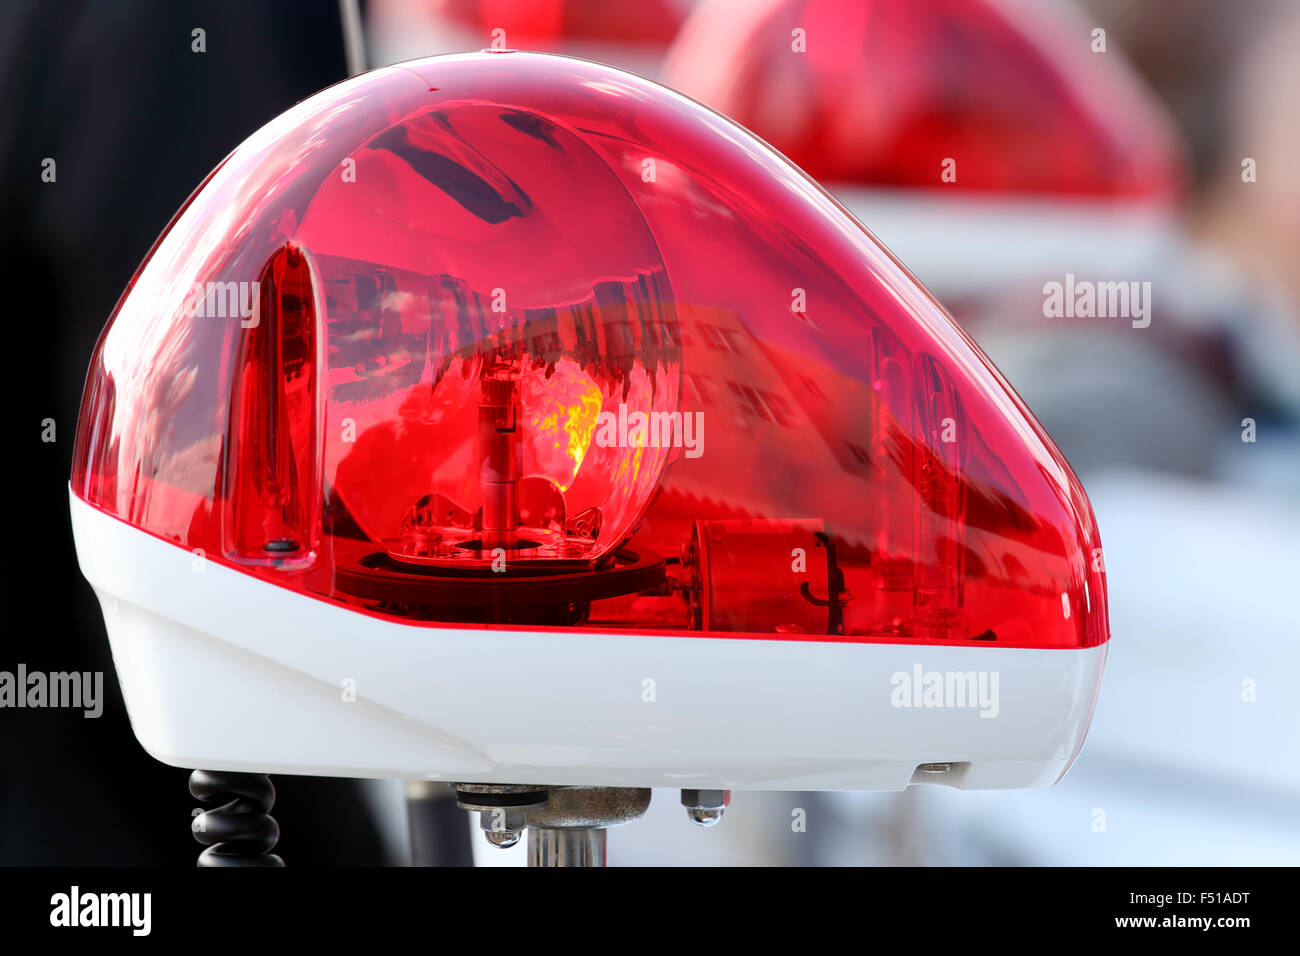 Rotes Licht Blinker einer Patrouille der Polizei Auto in der Nachbarschaft.  Sicherheit Sirene der kanadischen Polizei Fahrzeug. Tag Patrouillen der  Stadt mit Lichtern fl Stockfotografie - Alamy